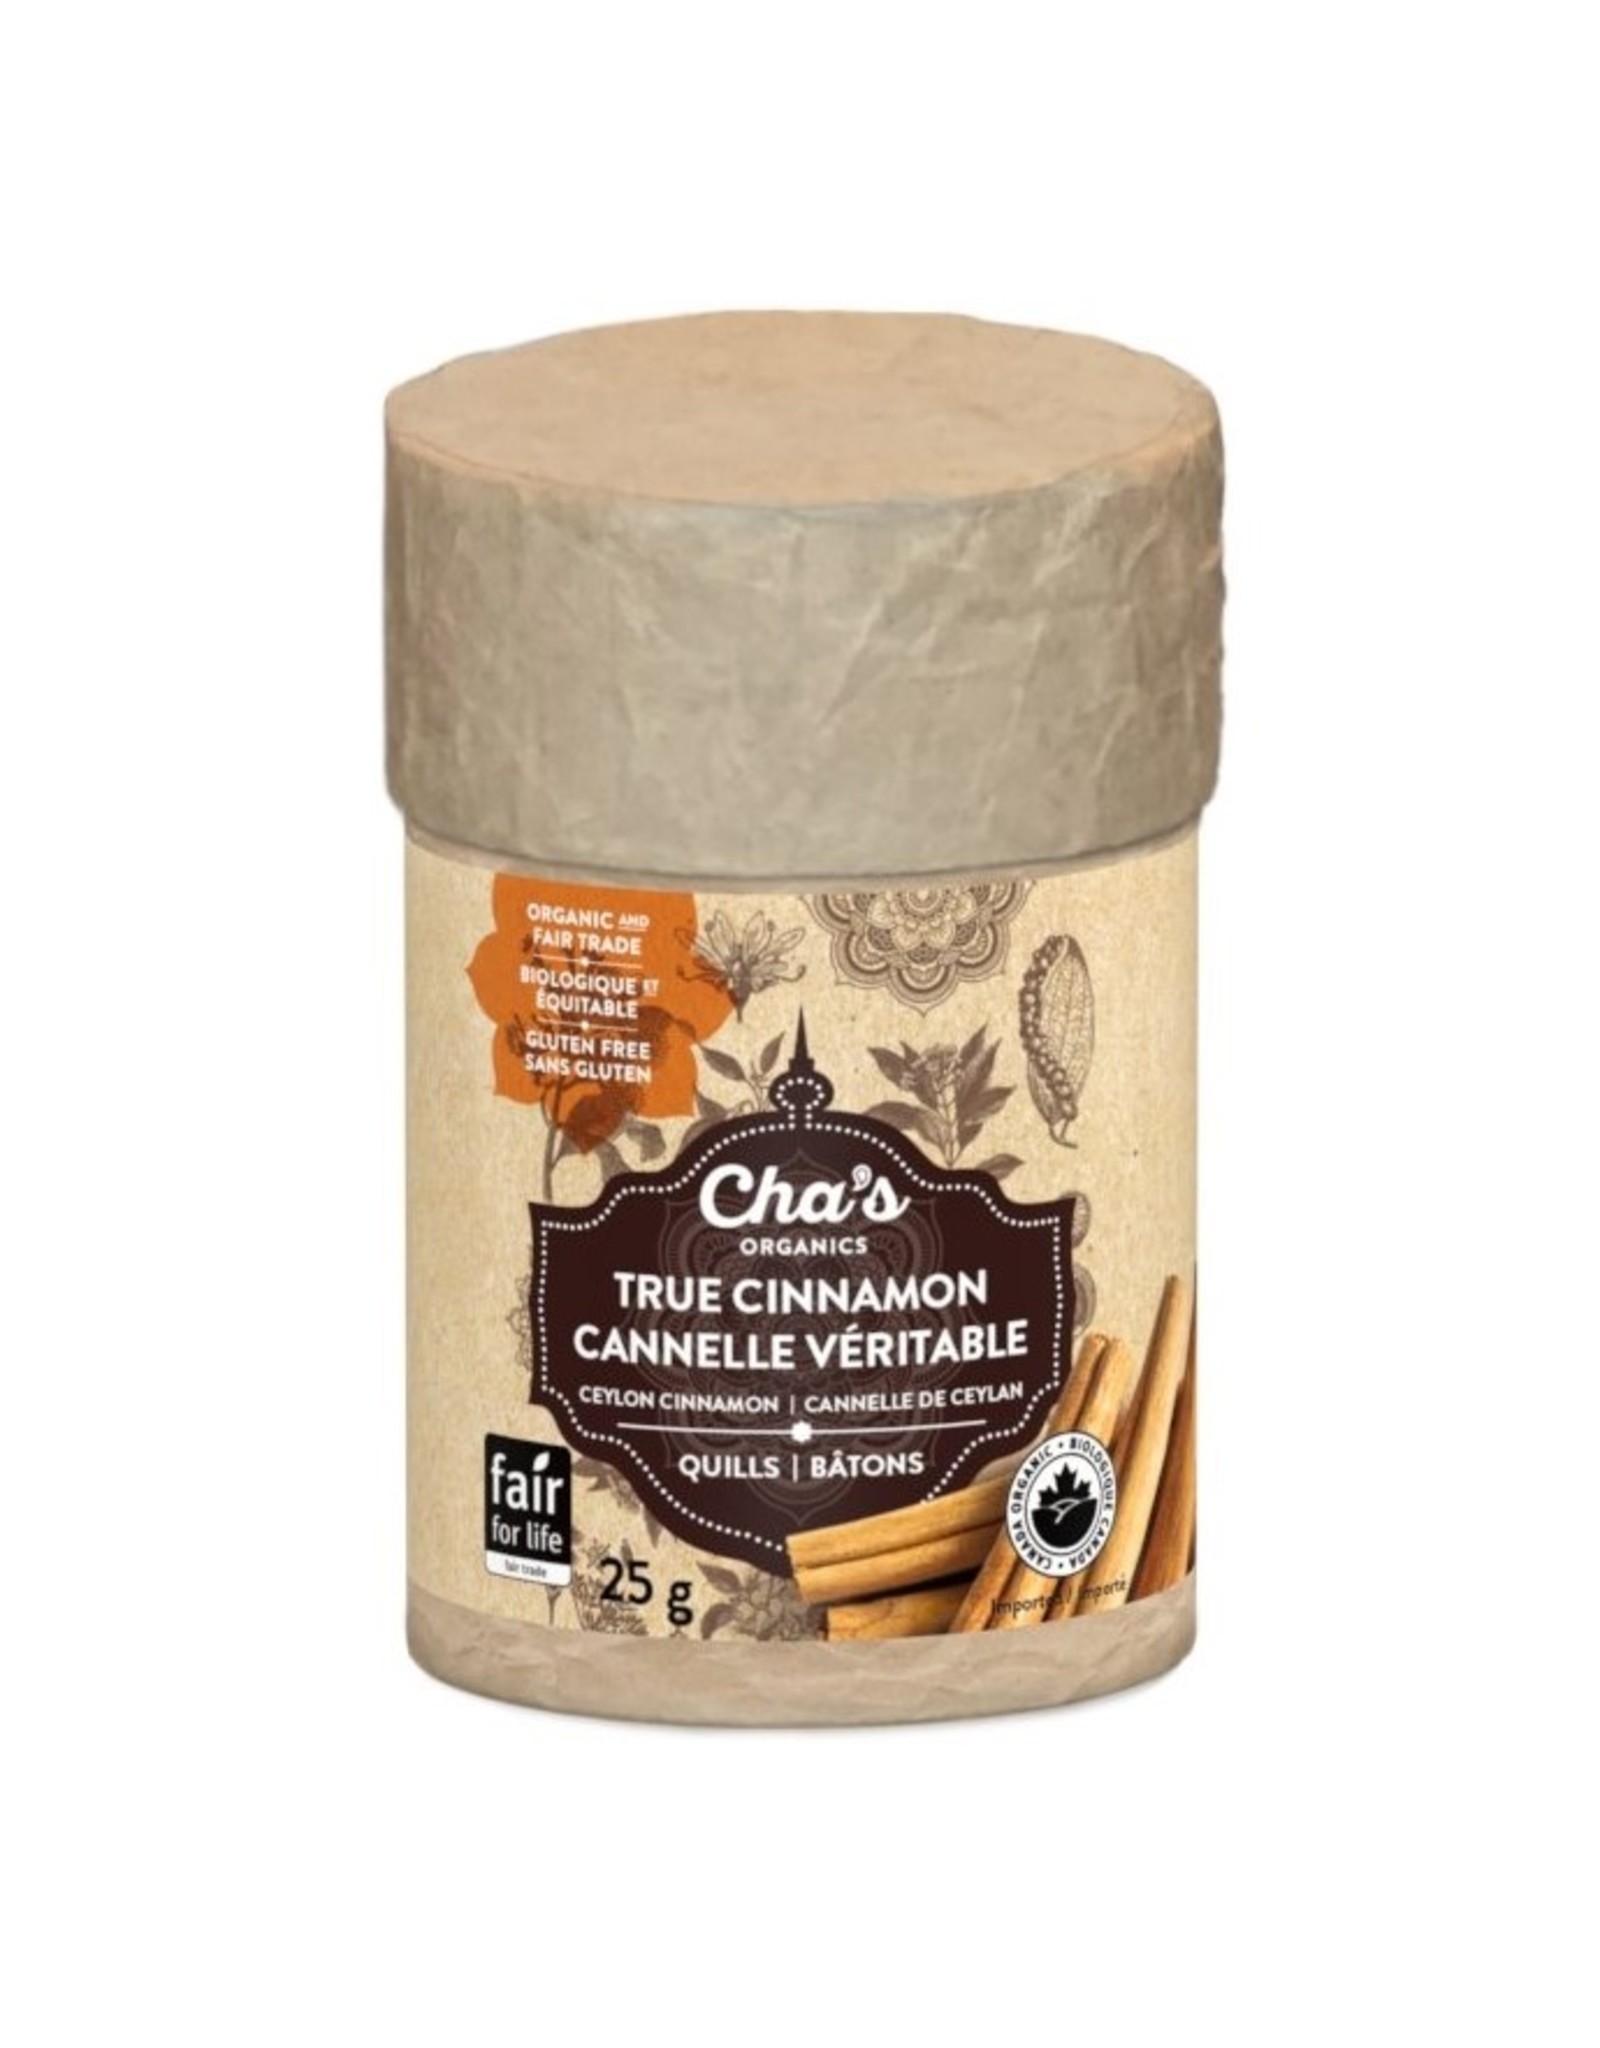 Sri Lanka Cha's Organics True Cinnamon Quills, 25g